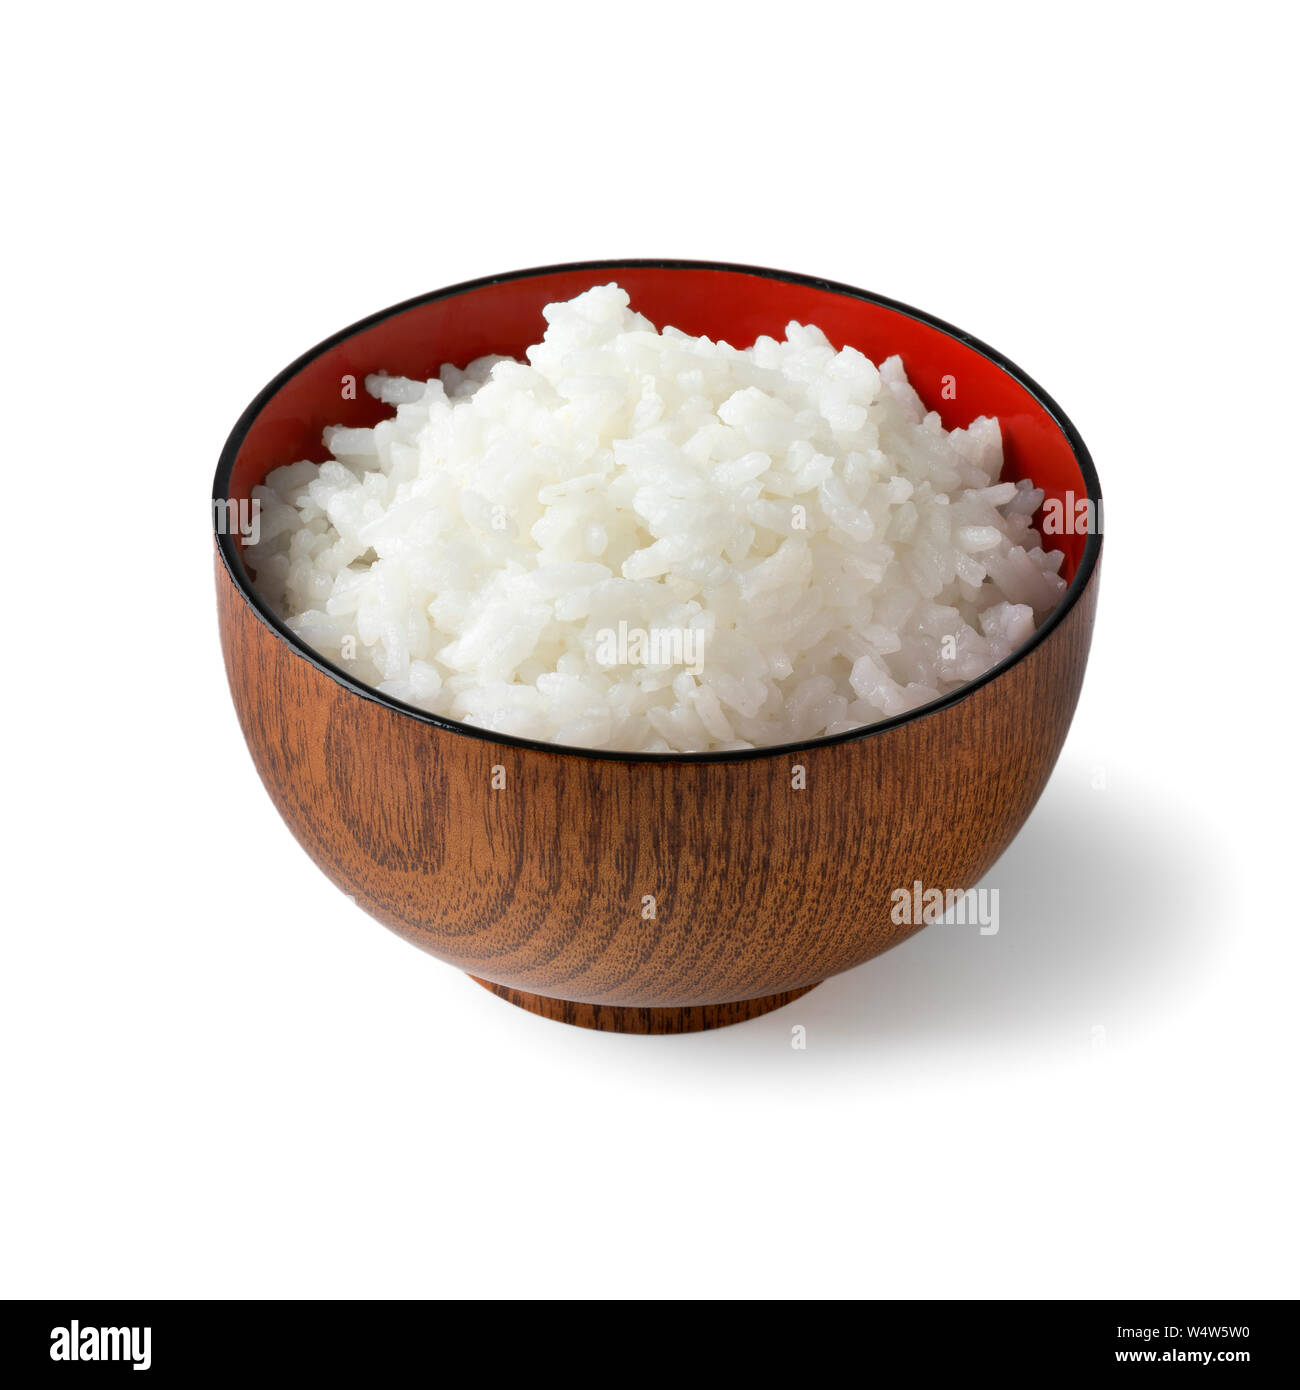 In legno tradizionale giapponese laccato ciotola con riso cotto isolati su sfondo bianco Foto Stock